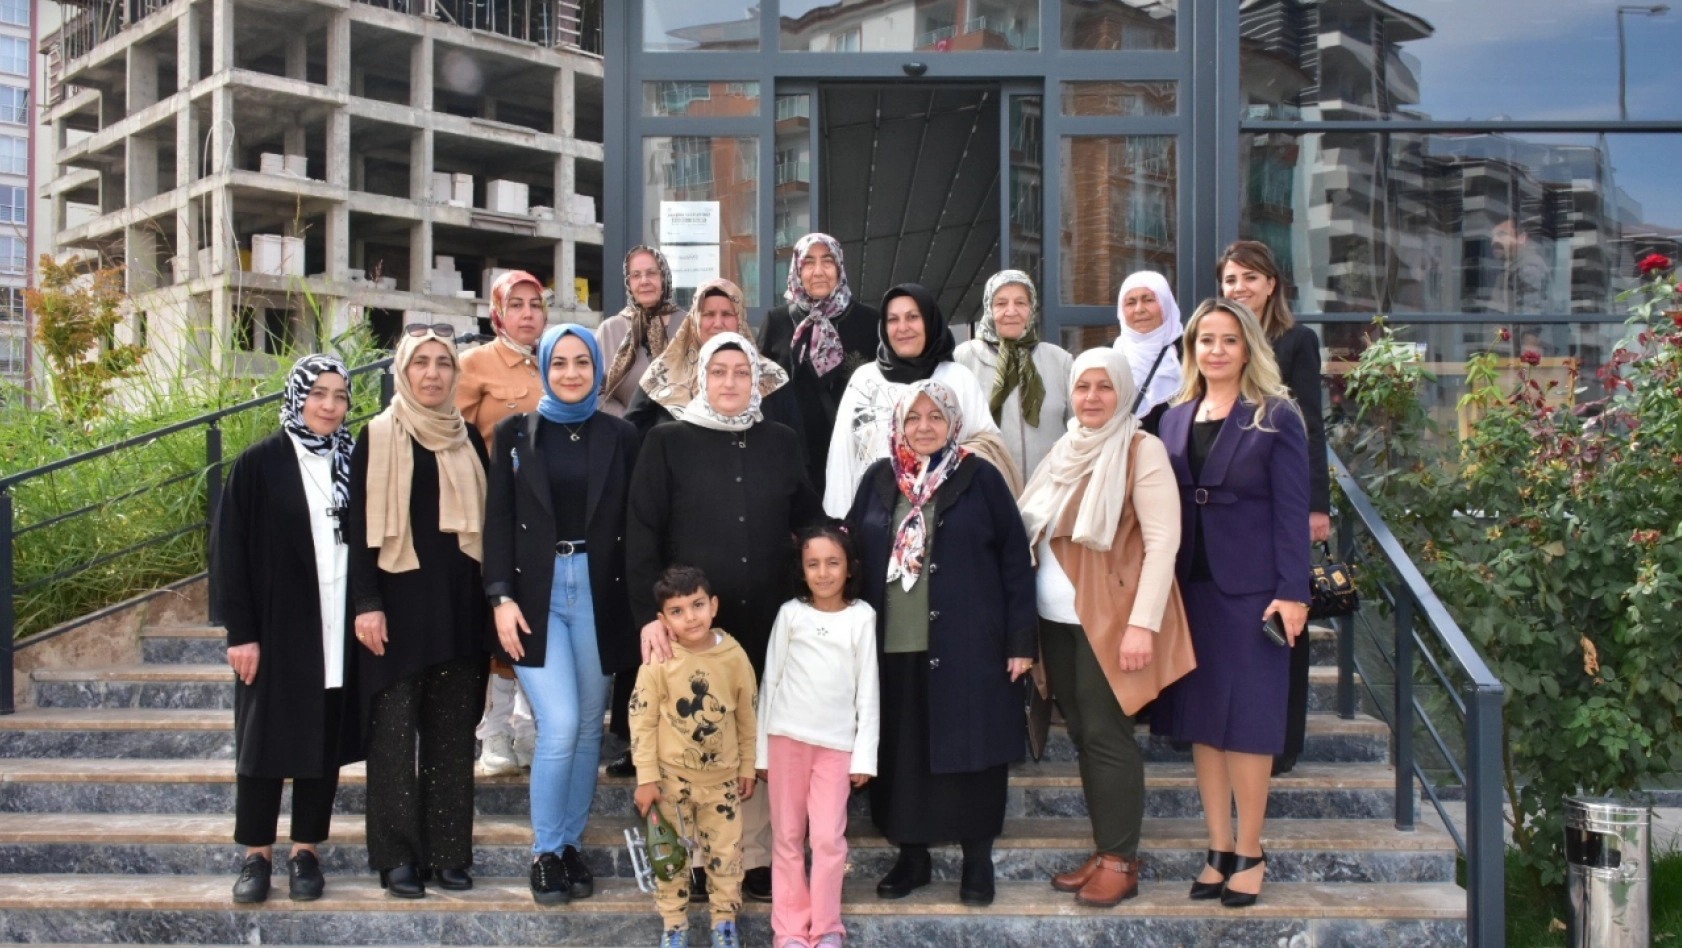 Malatya'da şehit aileleri ile Cumhuriyet'in 100 yılı buluşması